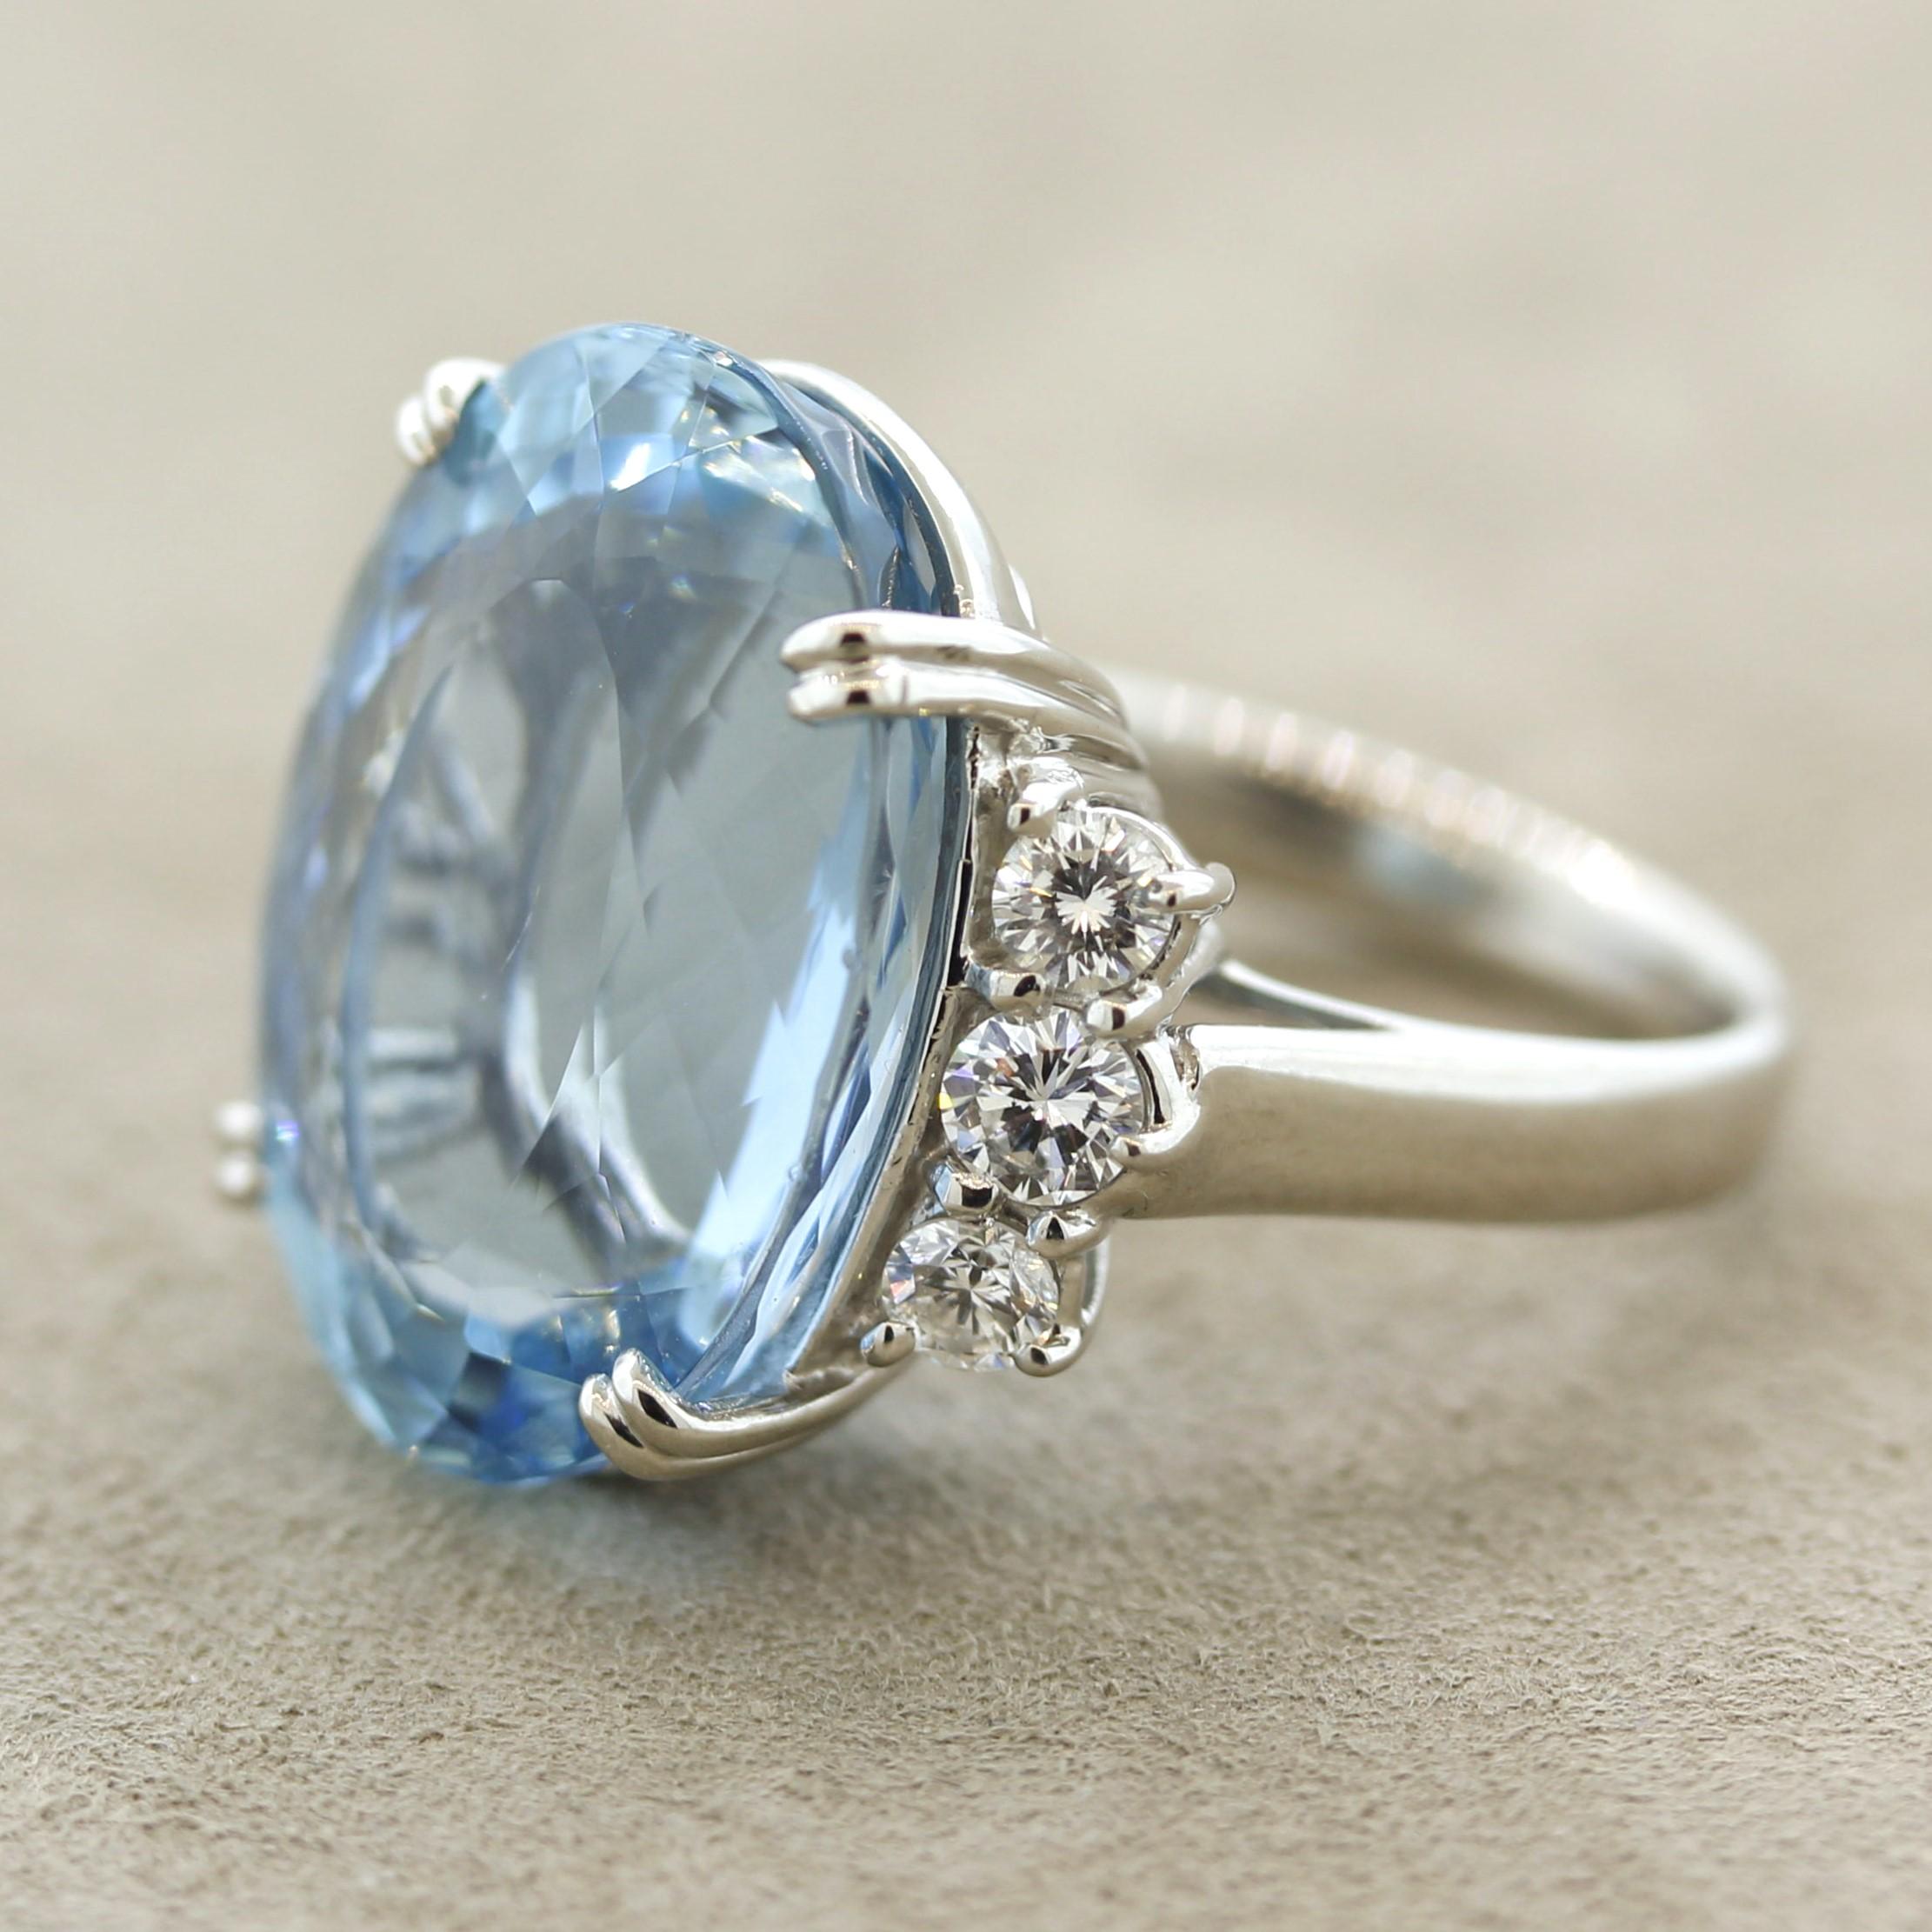 Mixed Cut Aquamarine Diamond Platinum Ring For Sale